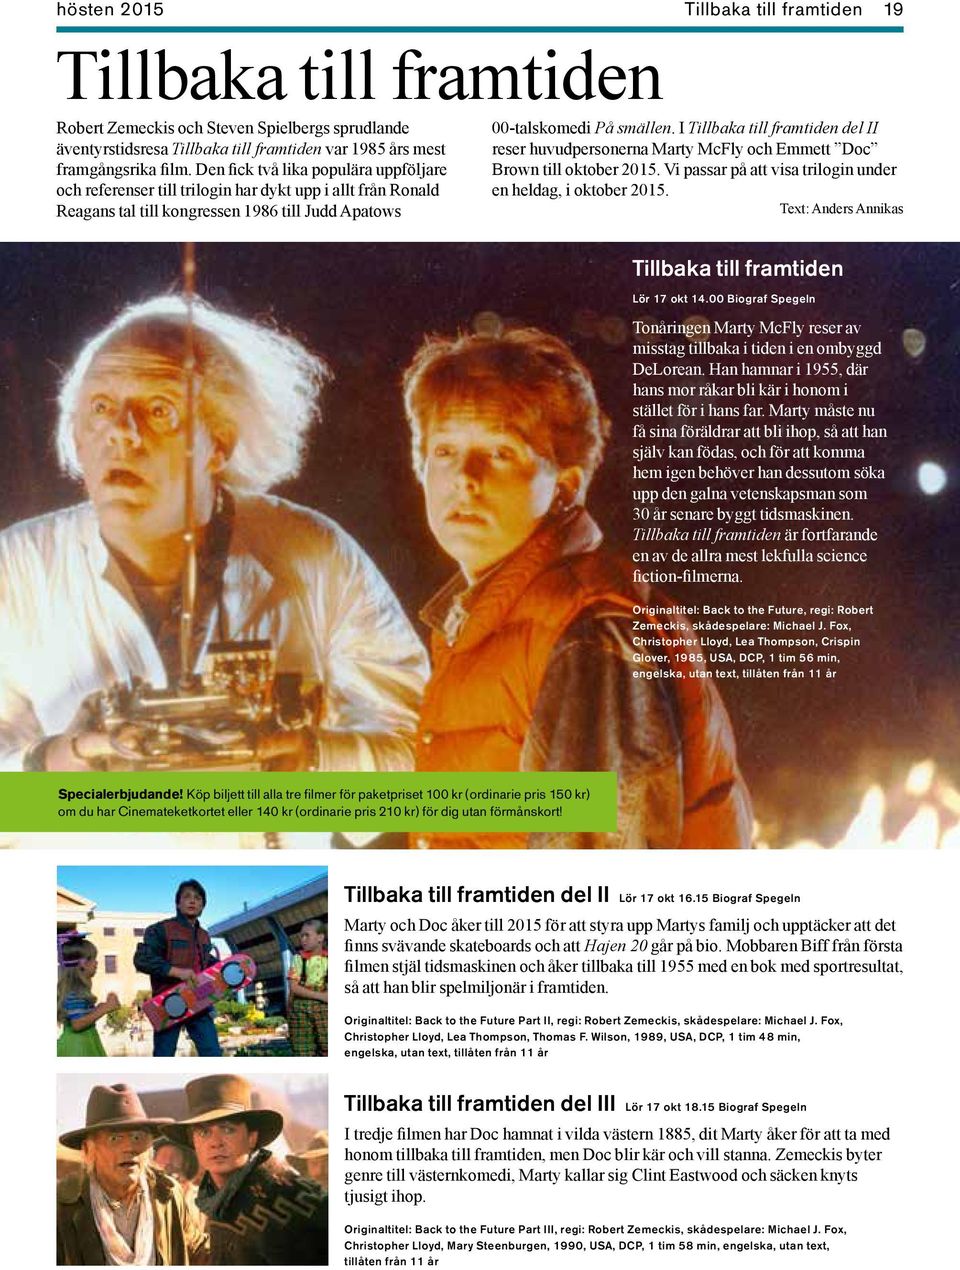 I Tillbaka till framtiden del II reser huvudpersonerna Marty McFly och Emmett Doc Brown till oktober 2015. Vi passar på att visa trilogin under en heldag, i oktober 2015.